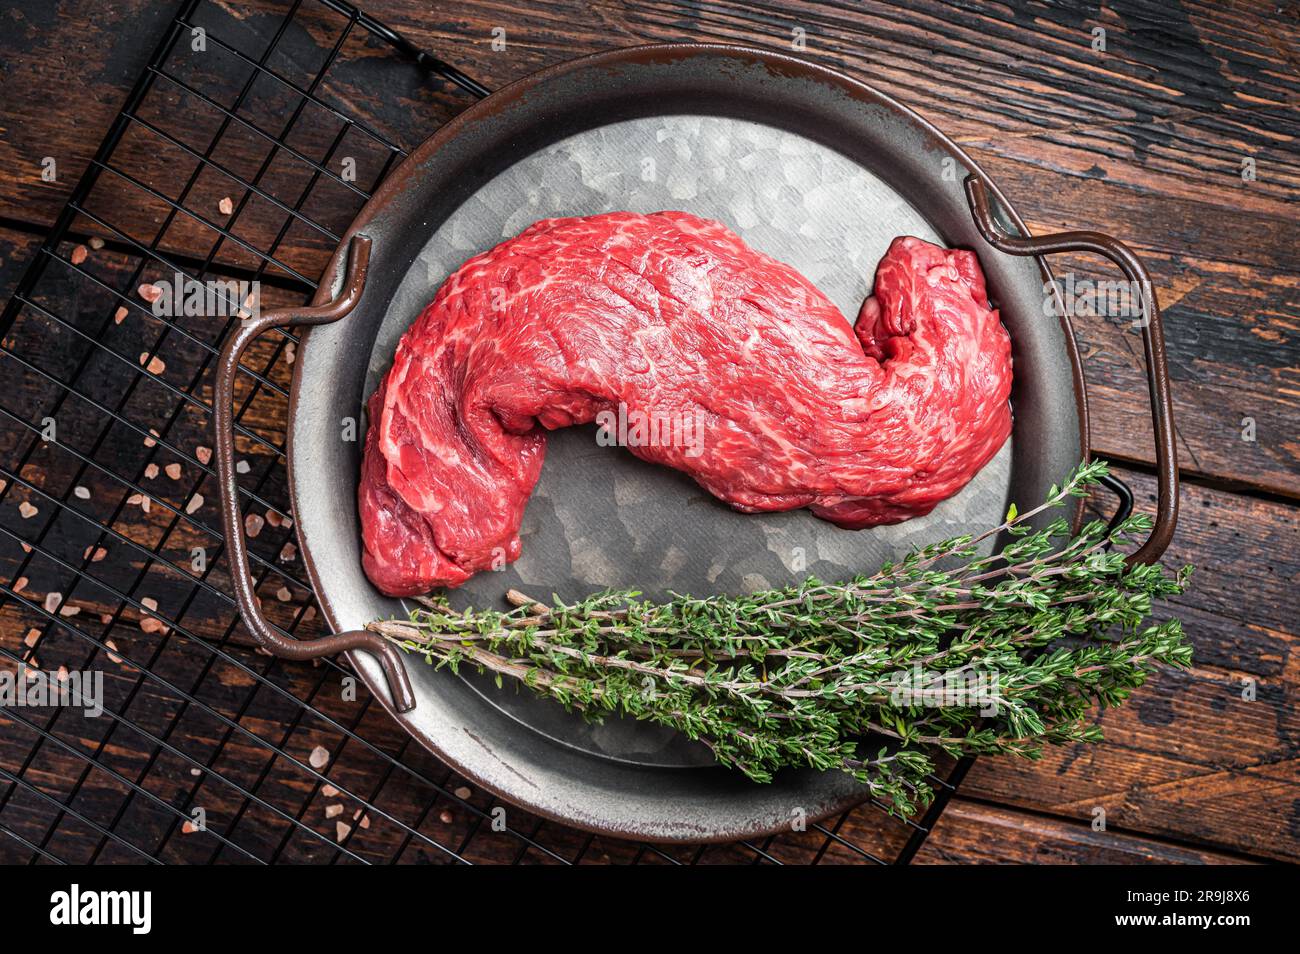 Steak de viande de bœuf à la machette non cuite, steak de jupe. Arrière-plan en bois. Vue de dessus. Banque D'Images